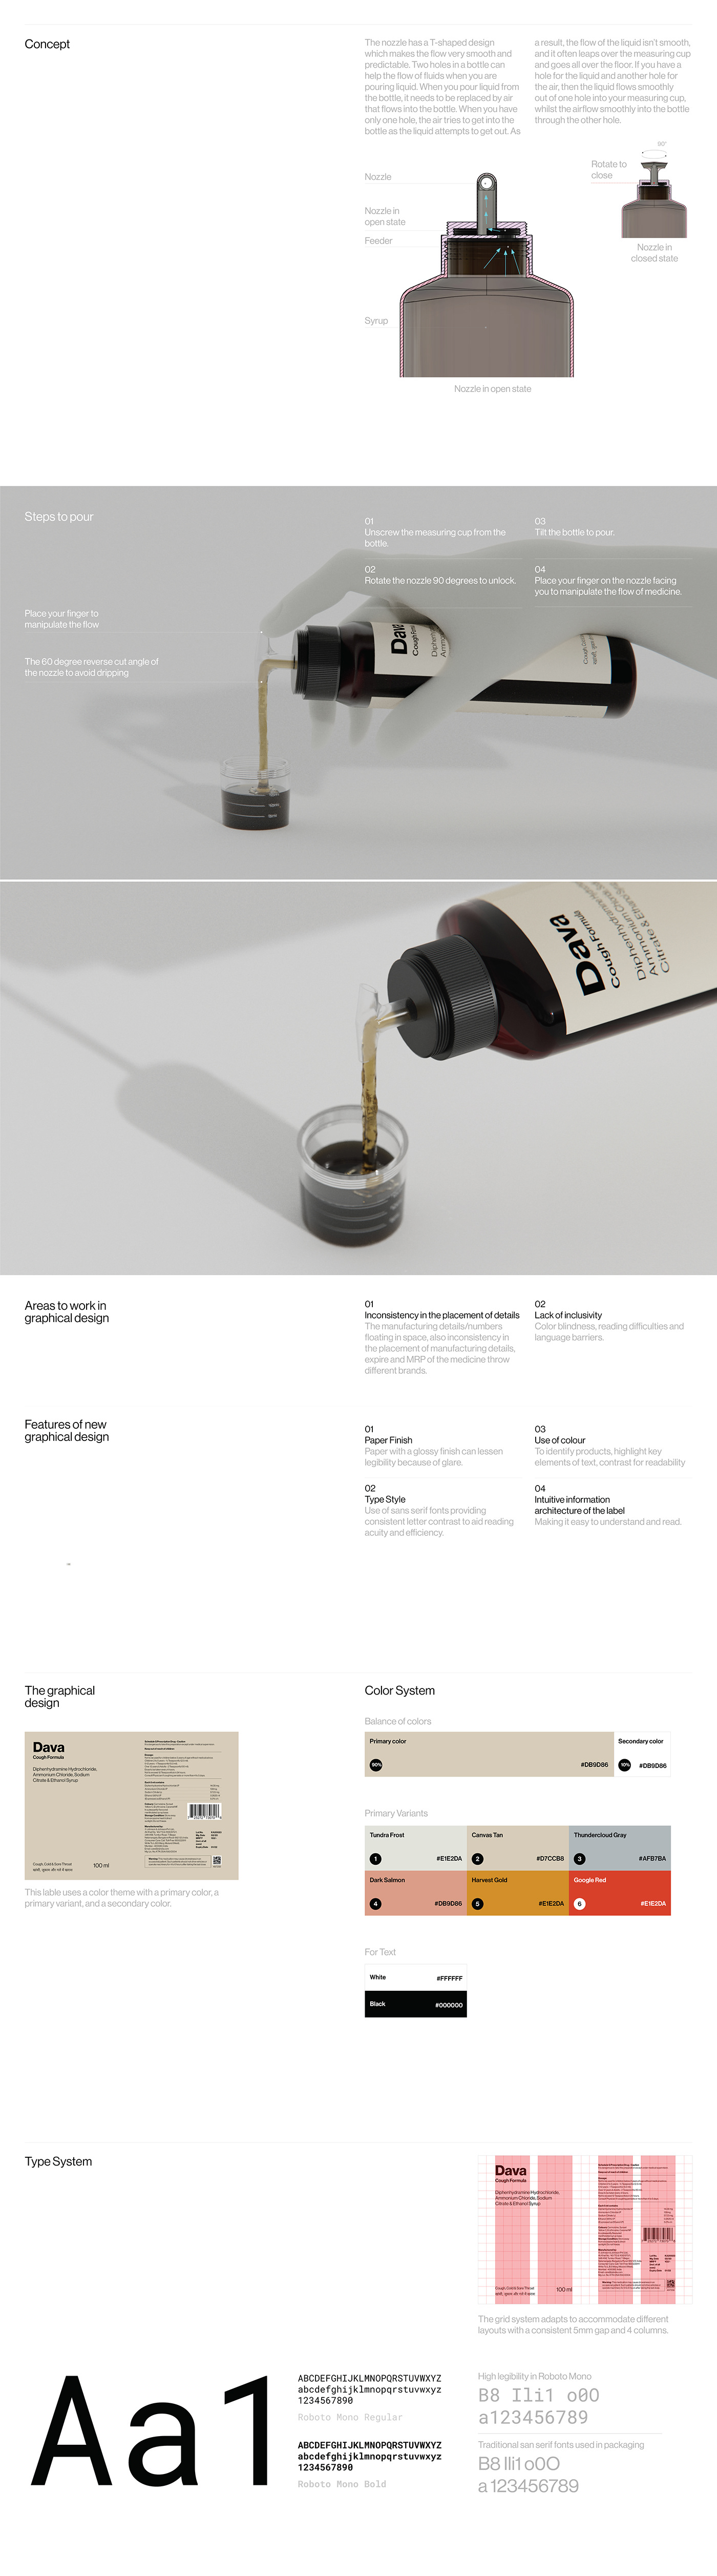 3d modeling brand identity design industrial design  keyshot Packaging portfolio product design  Render visualization